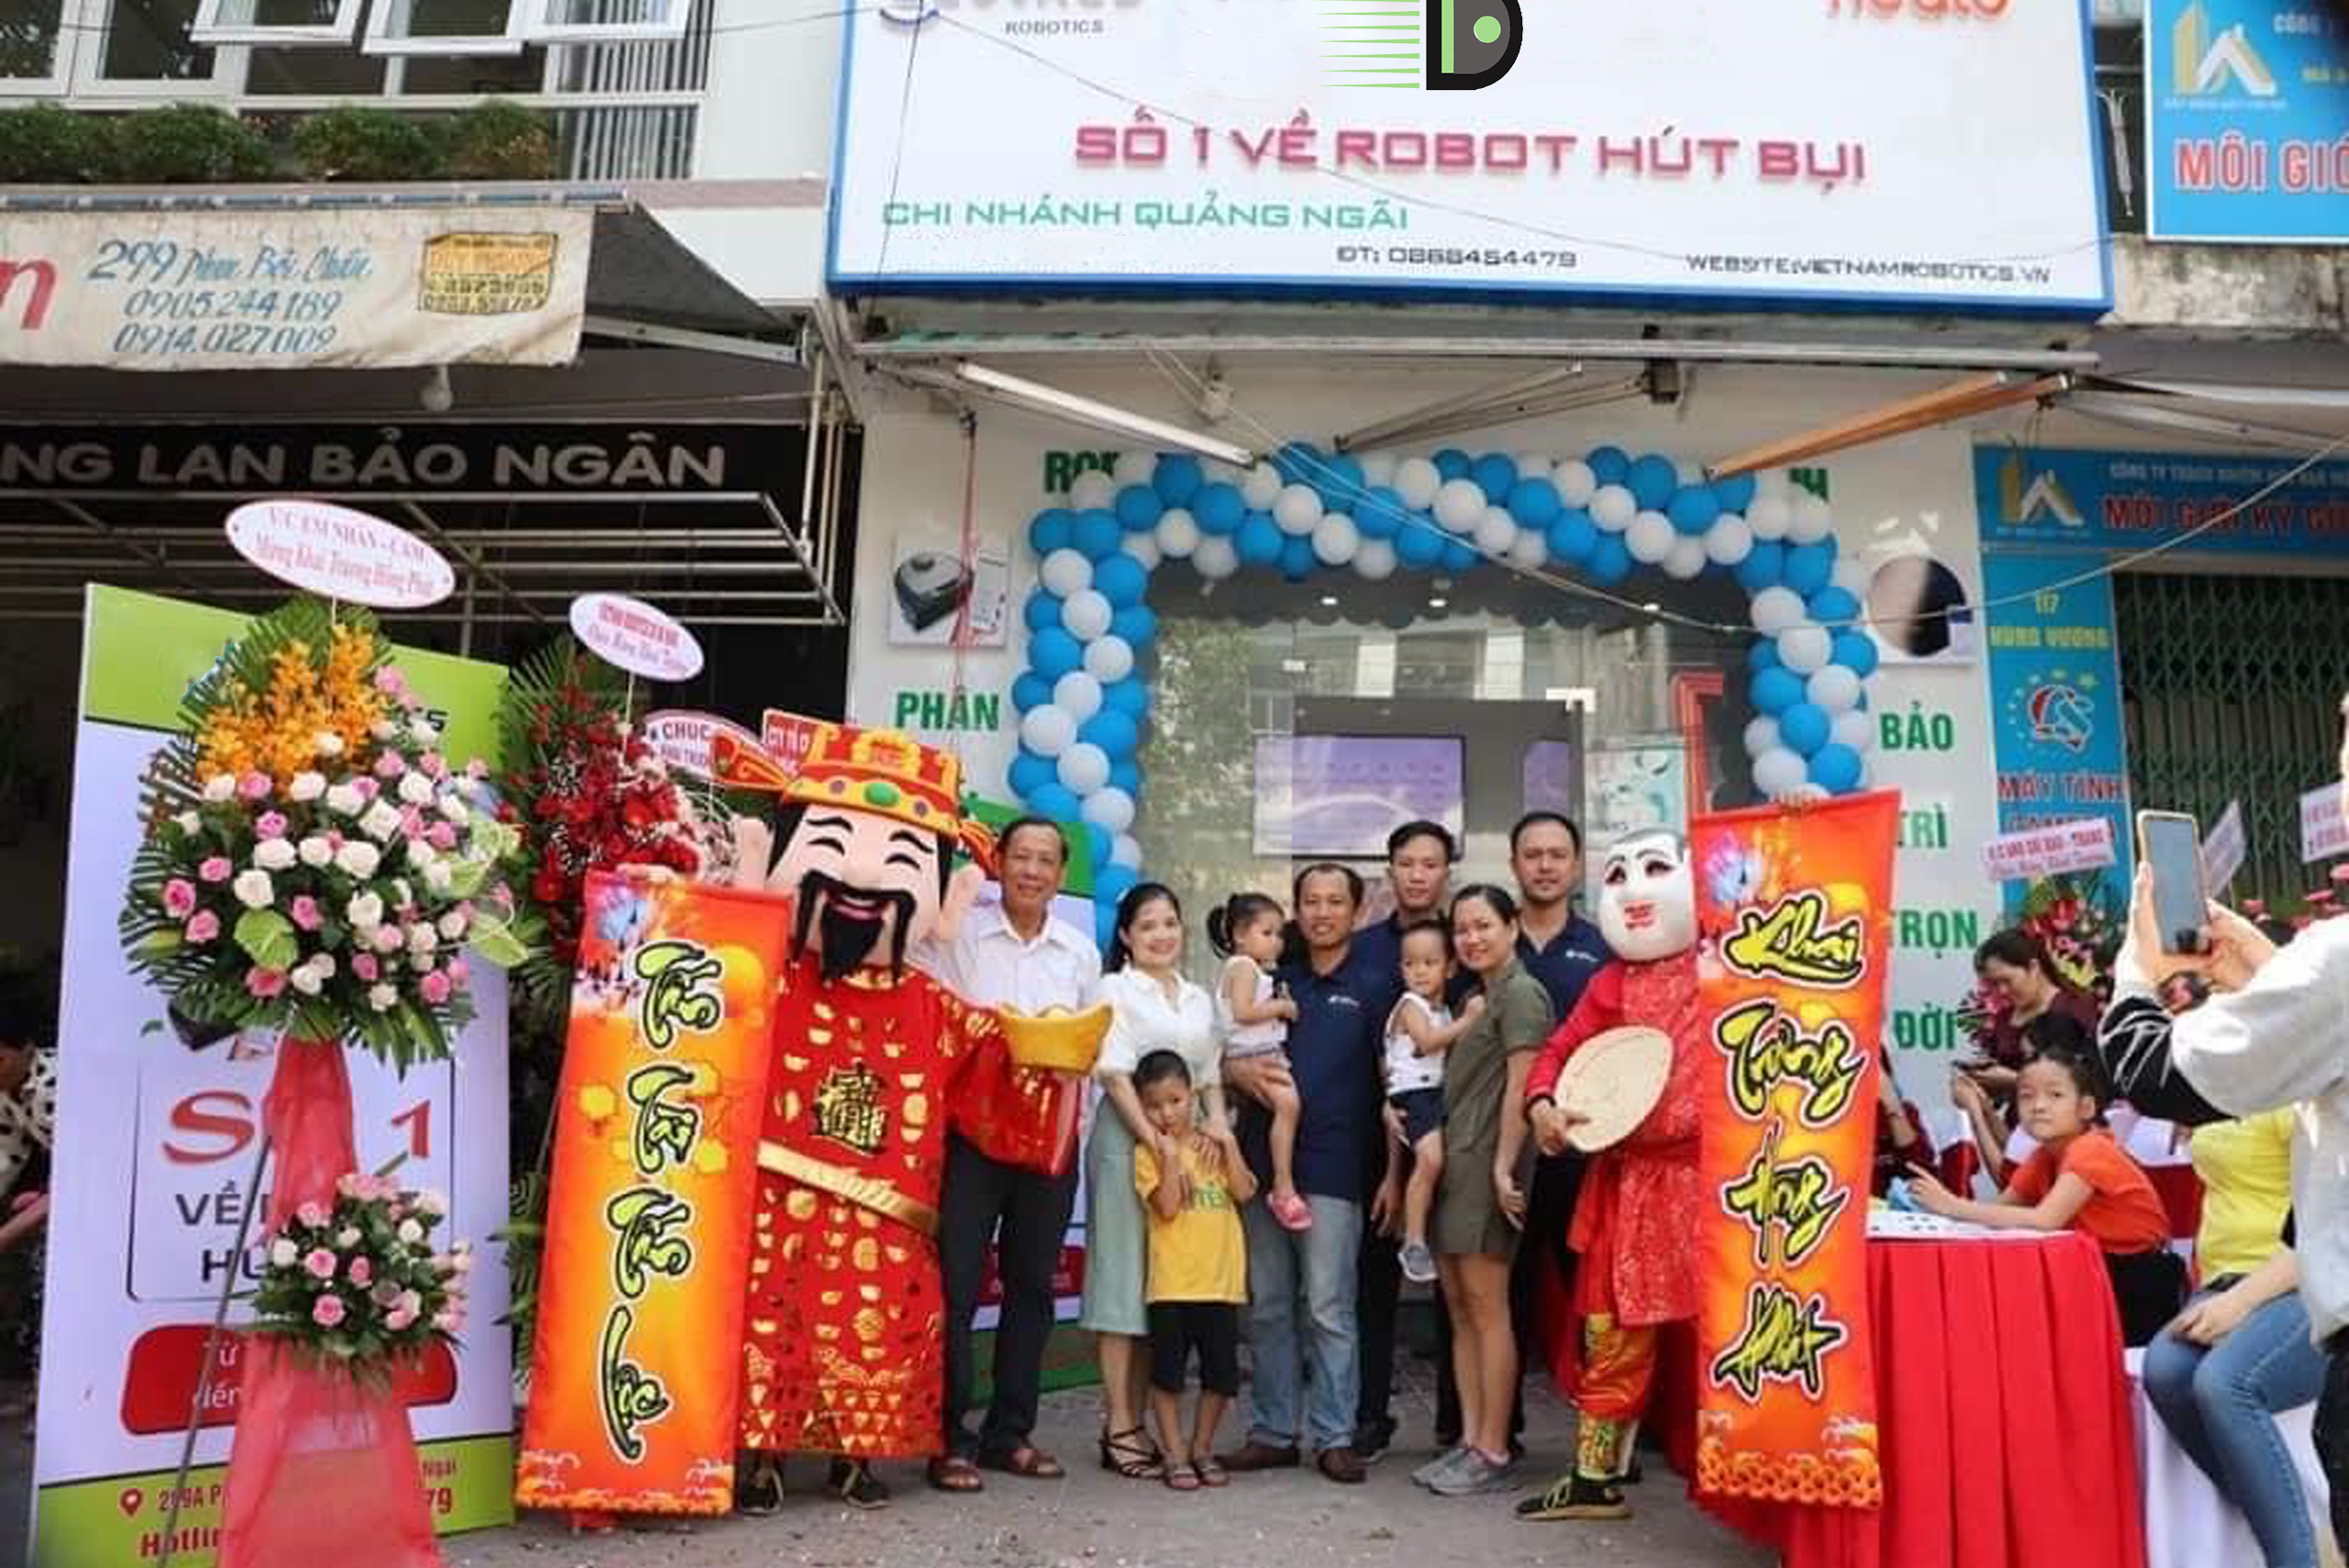 cửa hàng robot hút bụi lâu đời tại Đà Nẵng